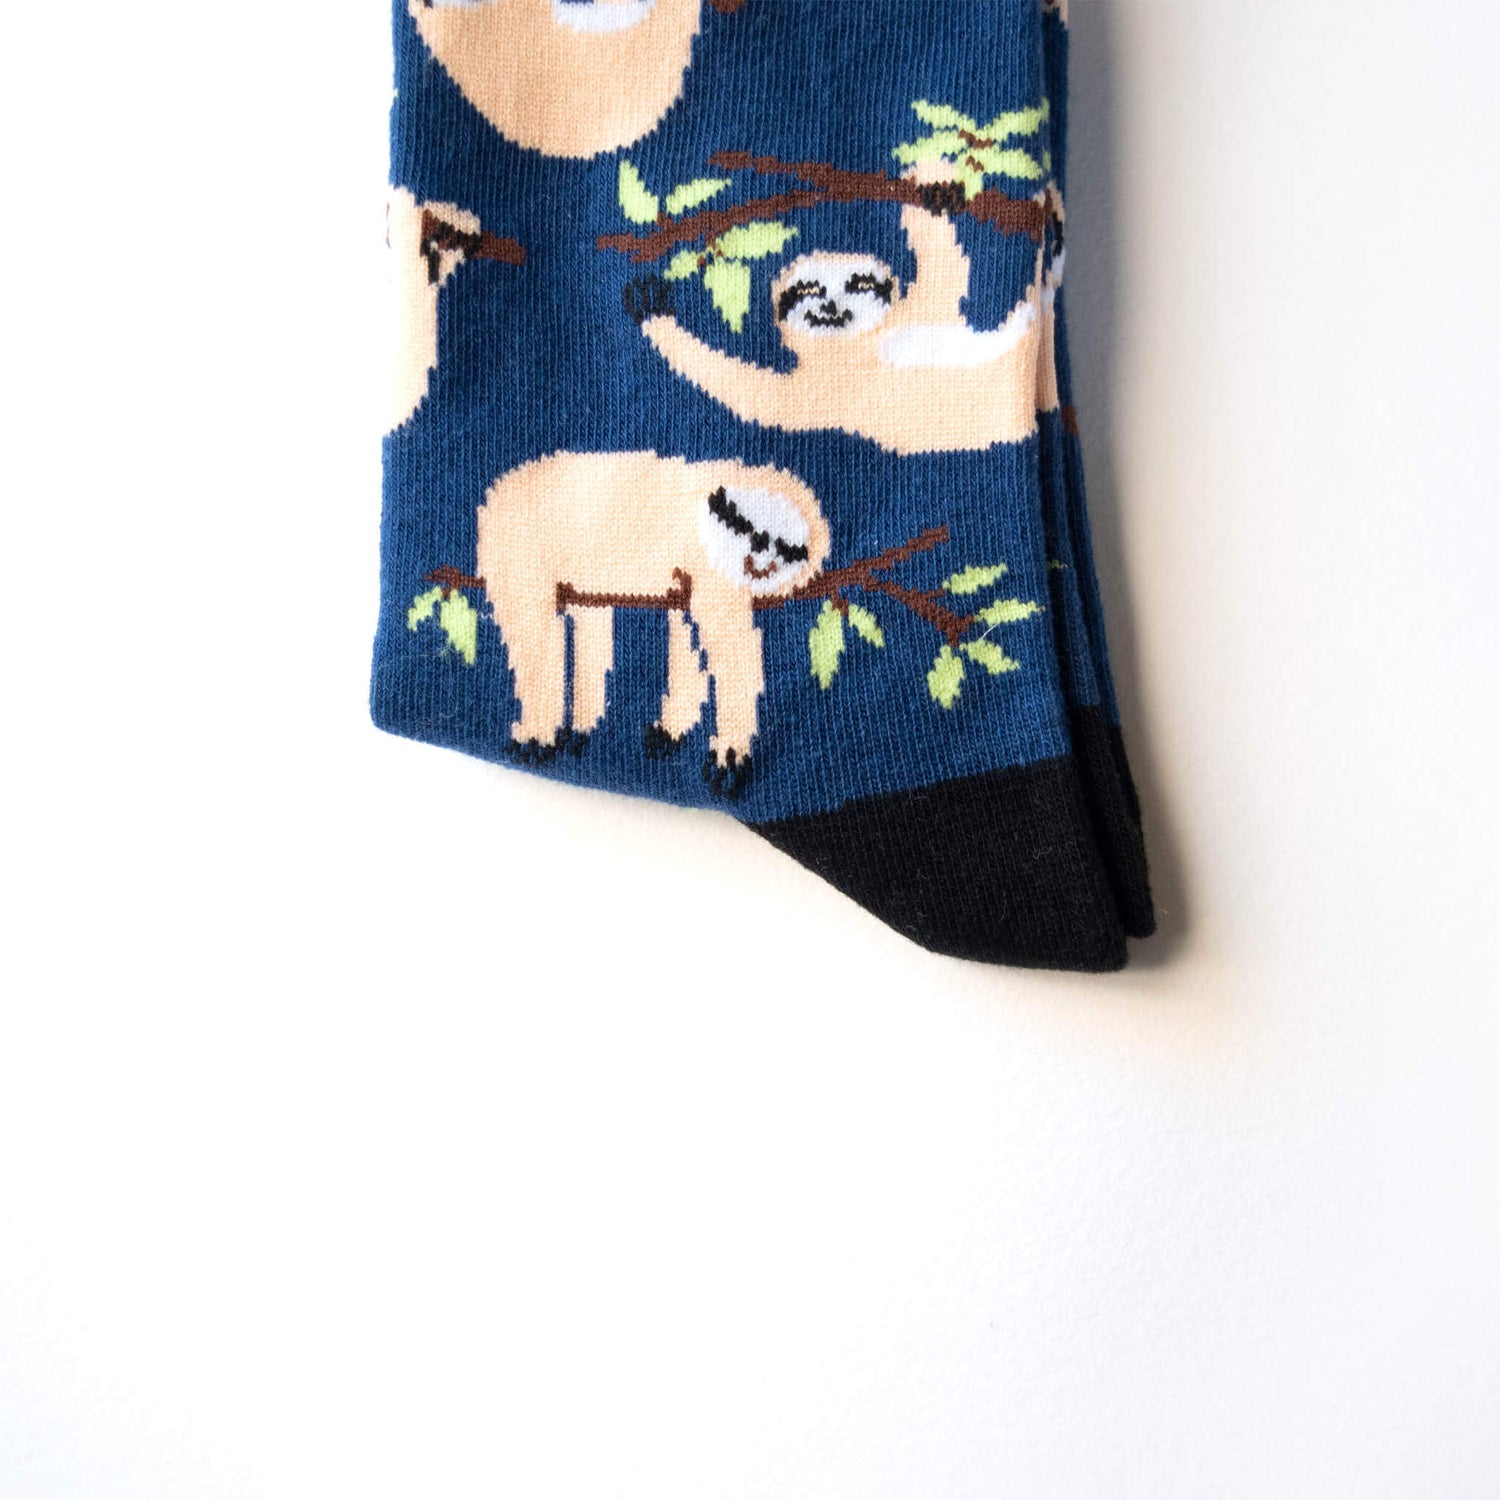 Colourful Socks Australia Sloth Socks